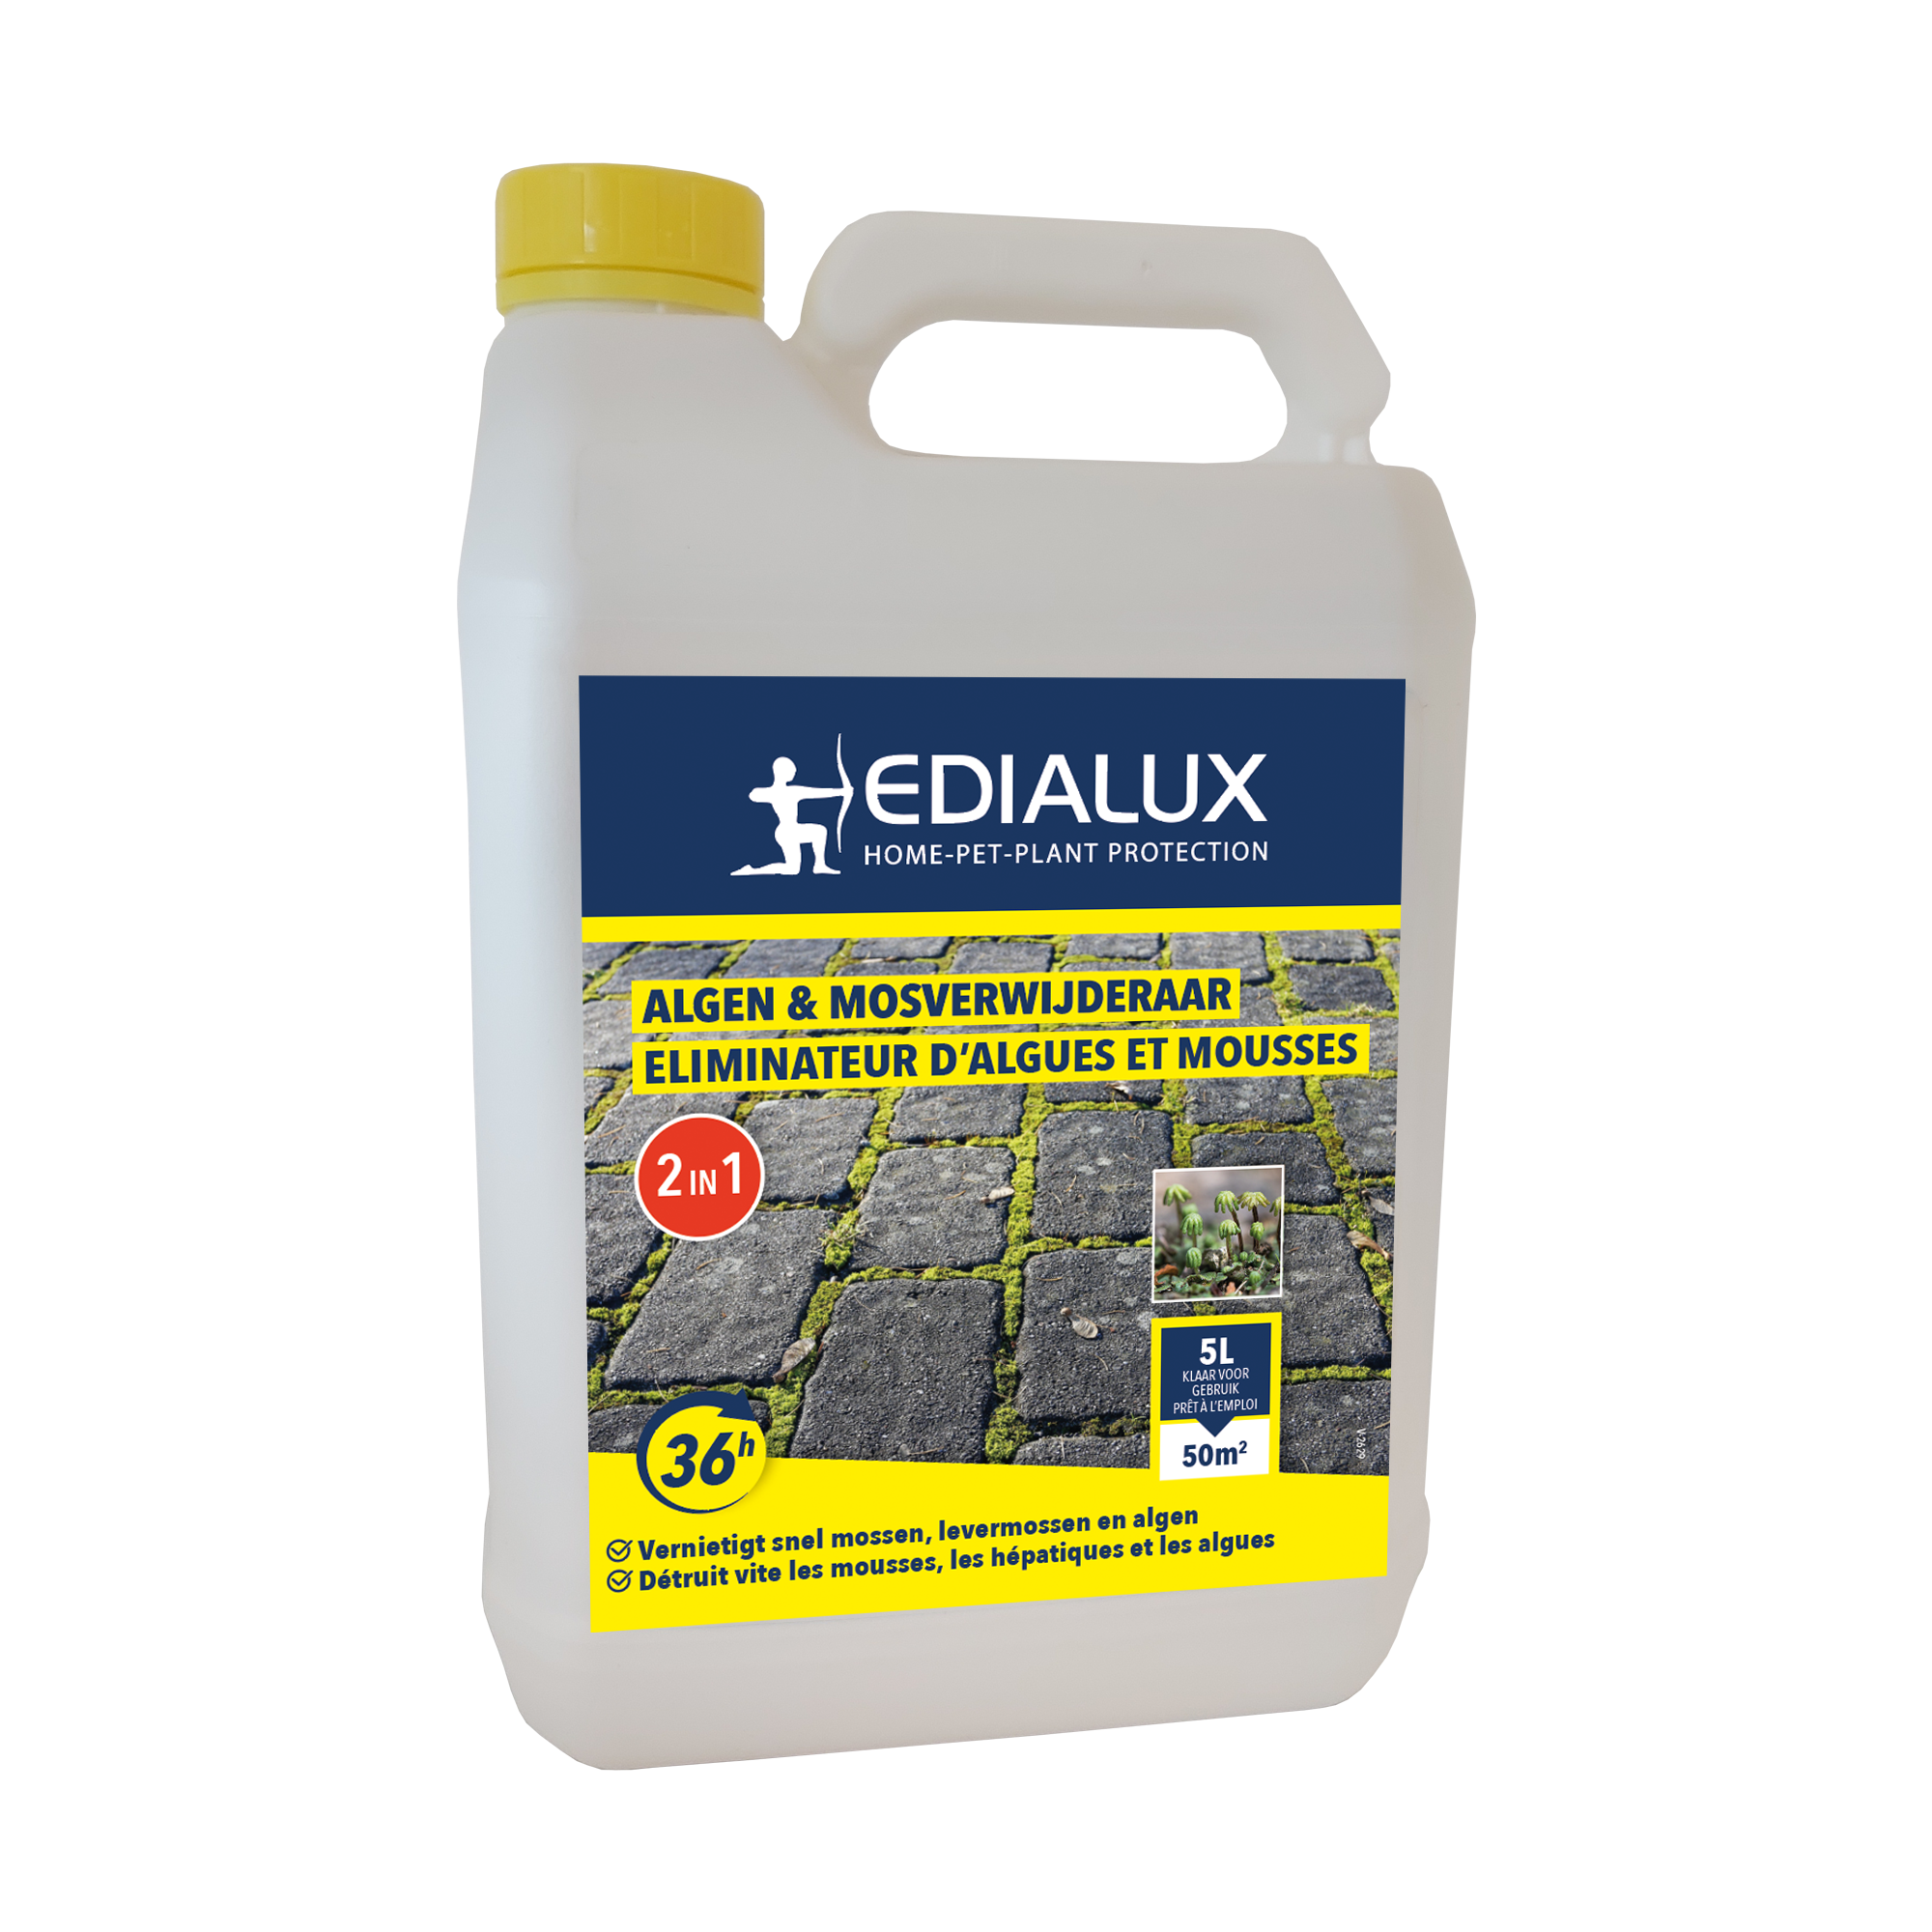 Edialux Algen & Mosverwijderaar 5L: Effectieve 2-in-1 oplossing tegen algen en mos op terrassen, paden en andere oppervlakken.